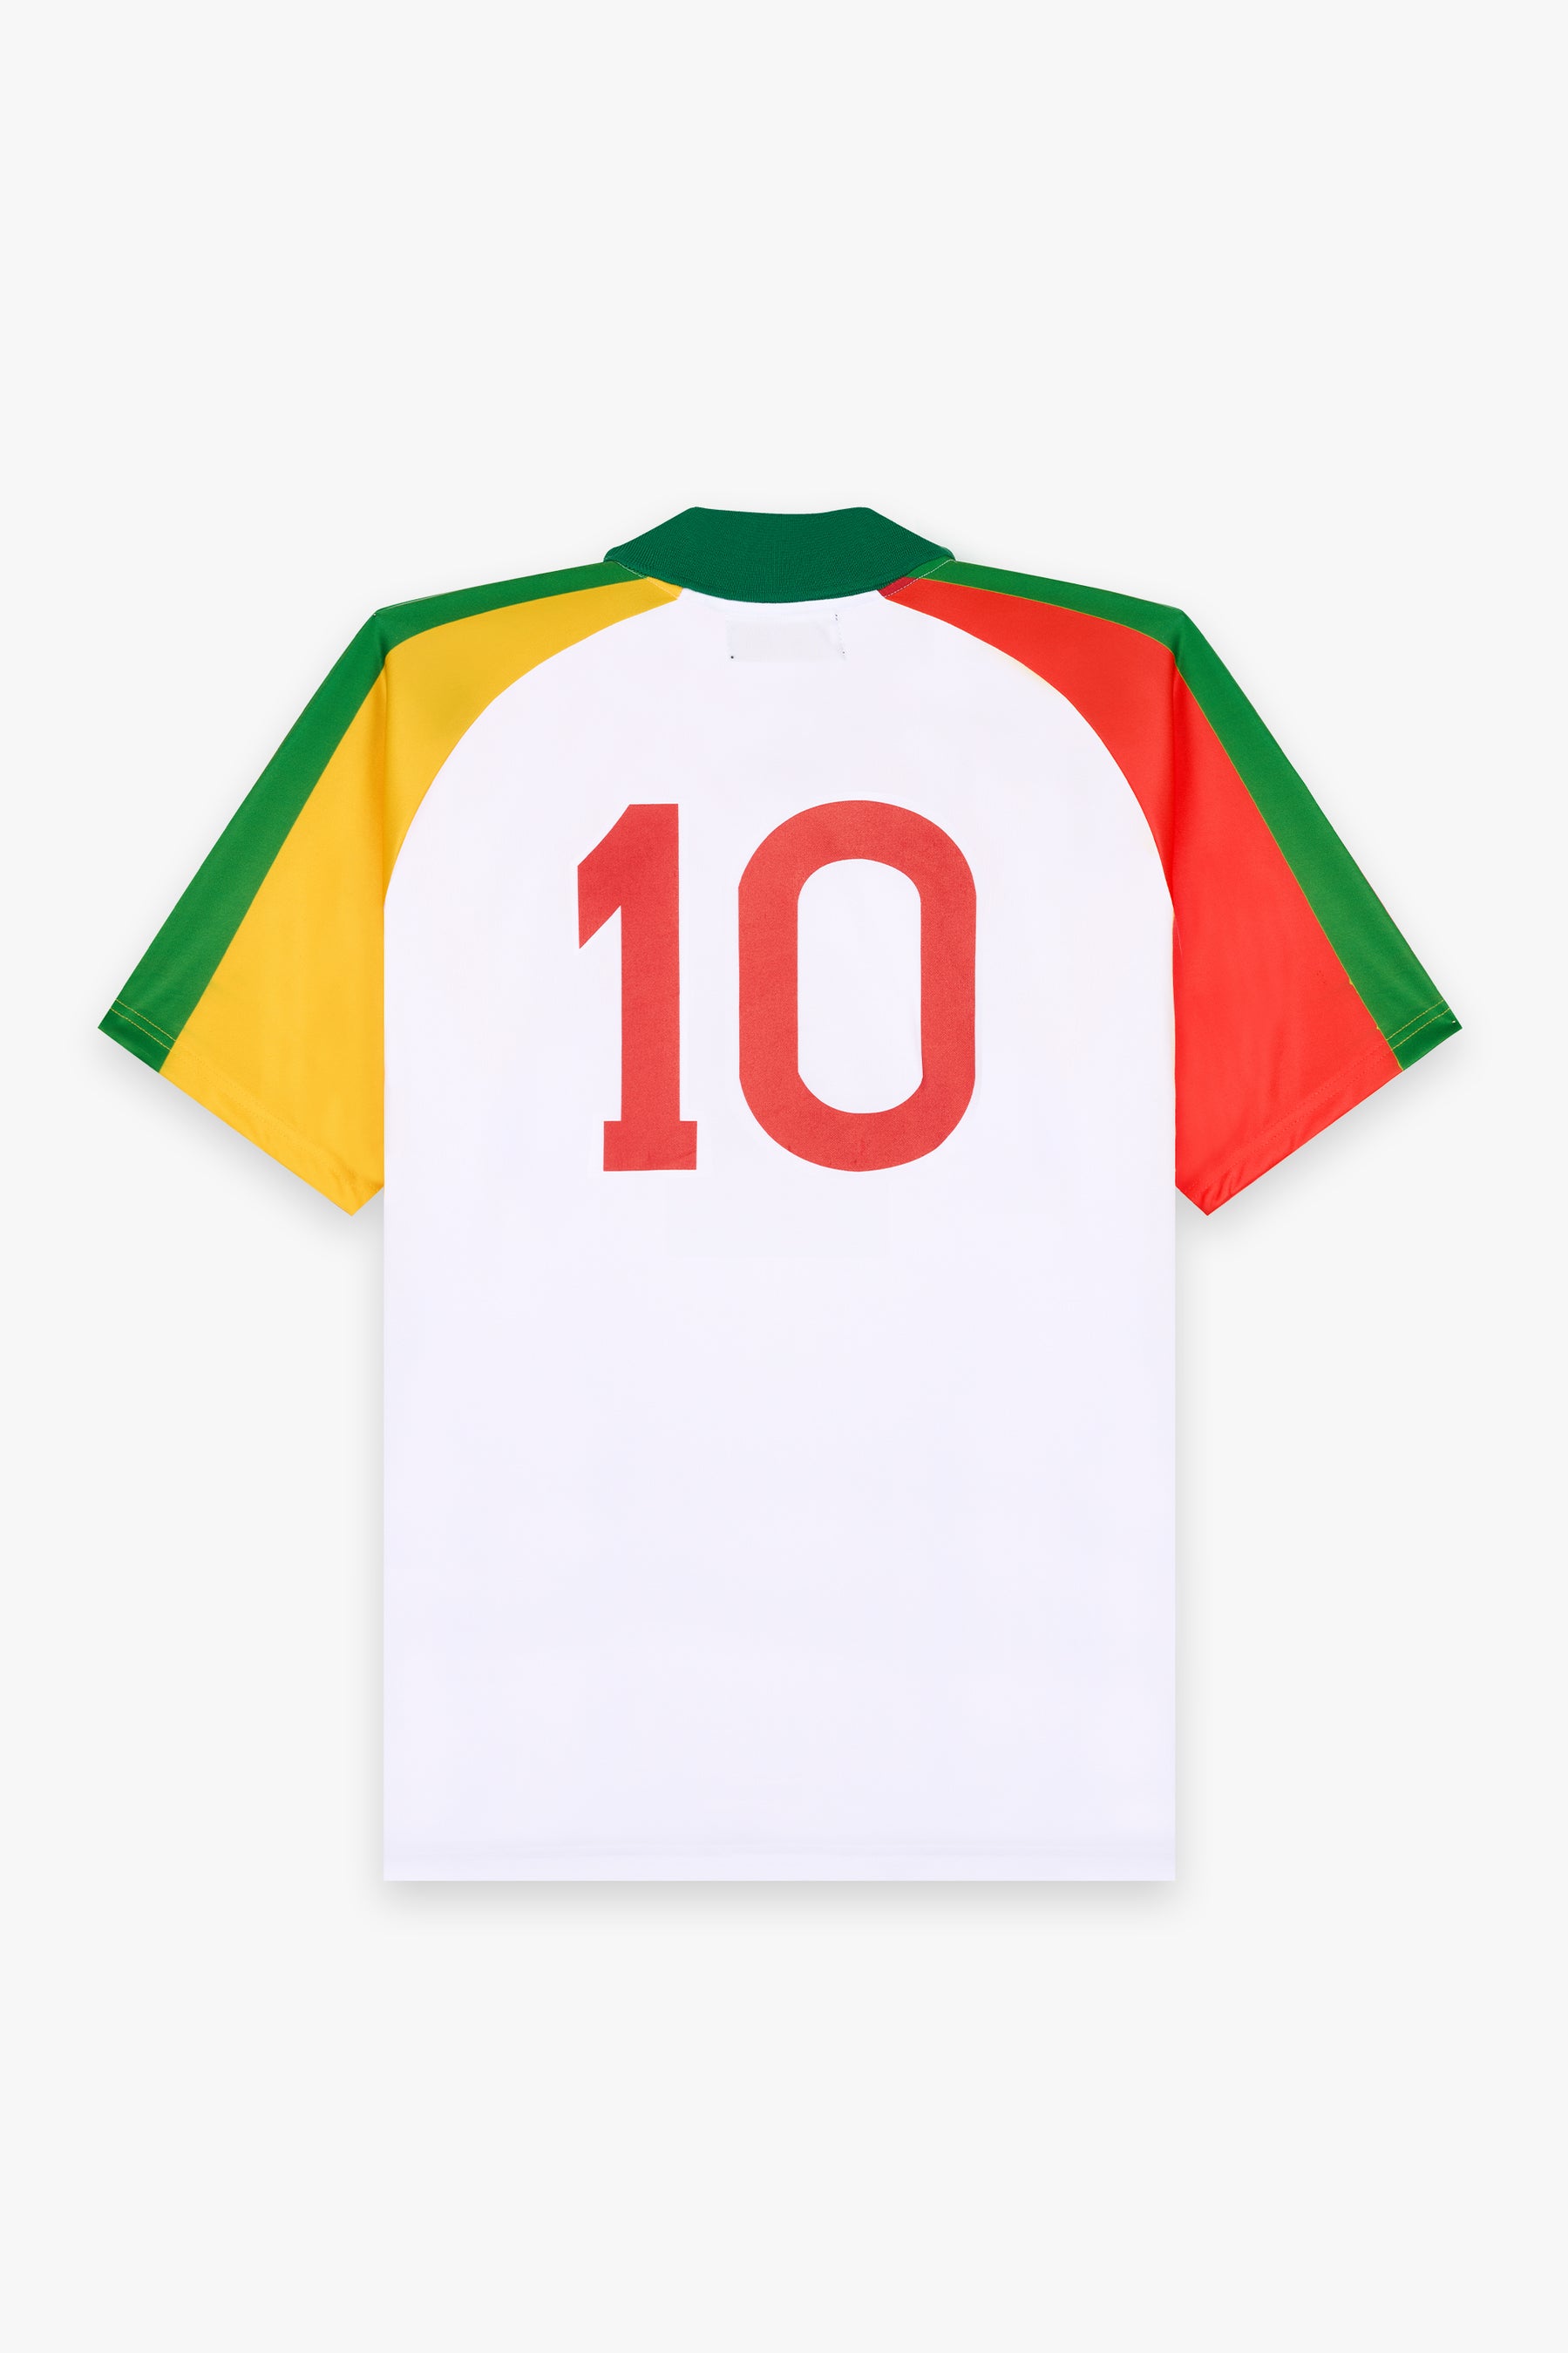 Fadiga jersey Senegal